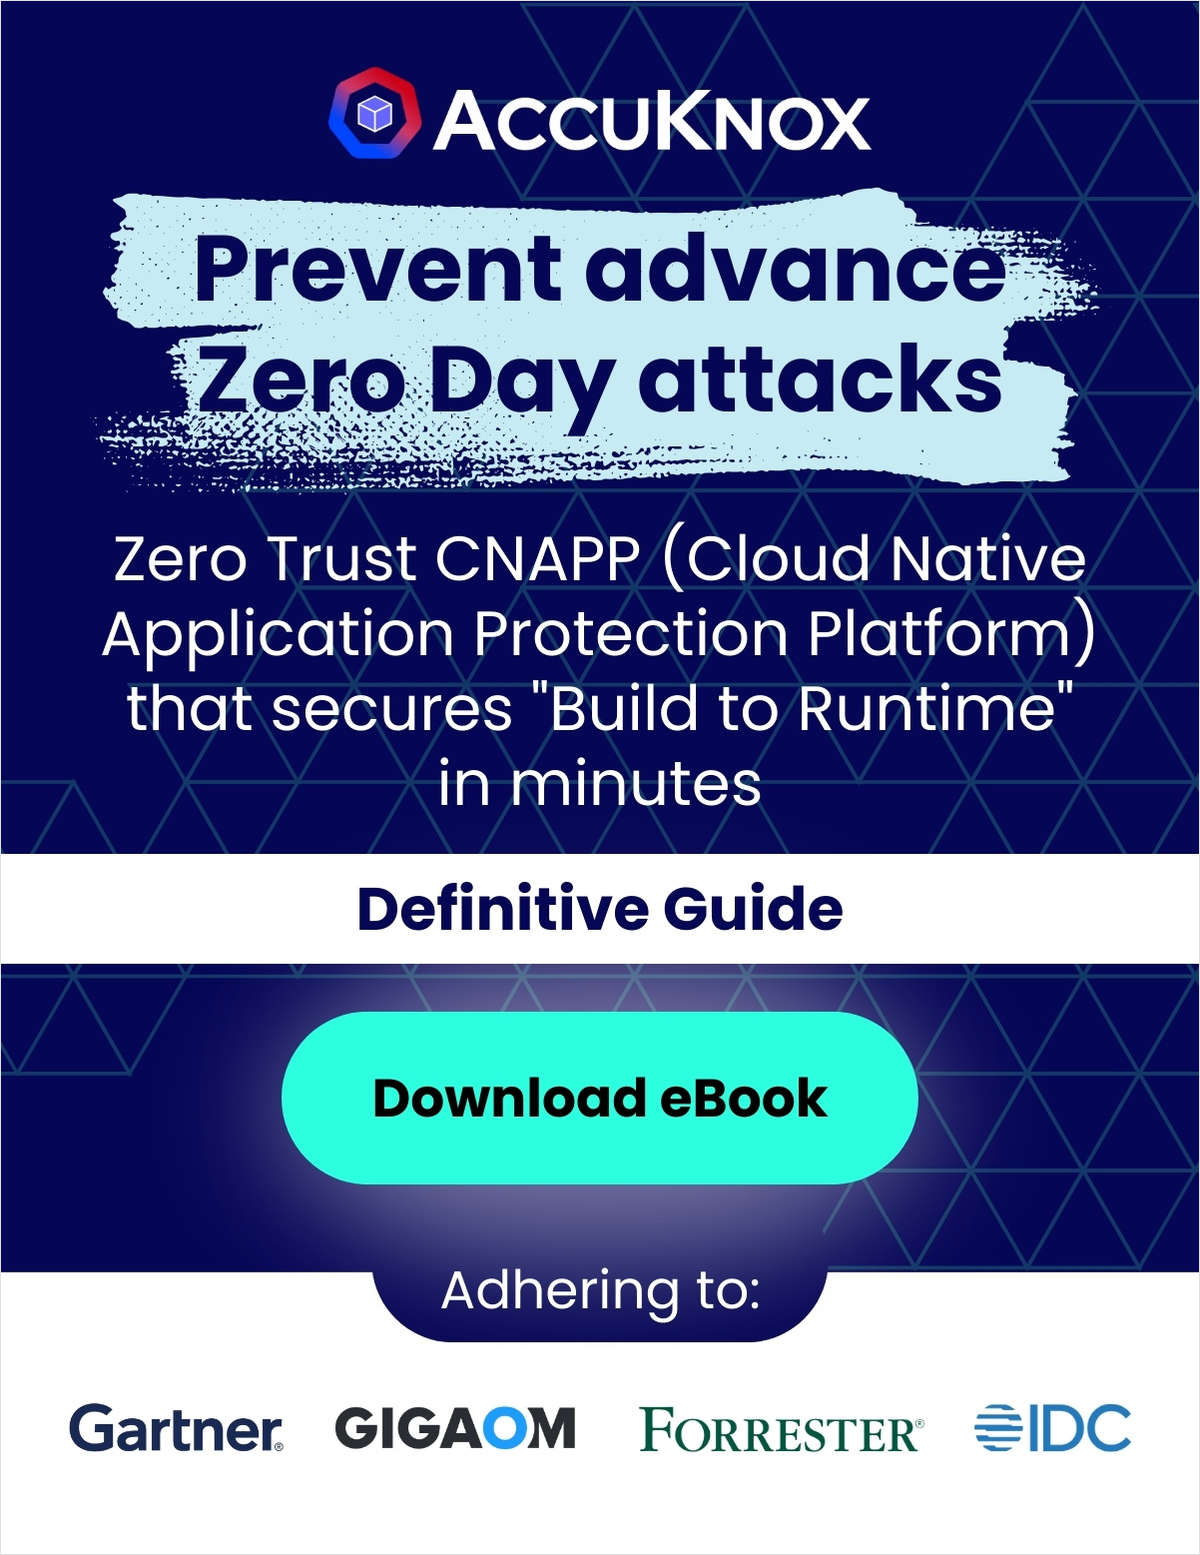 How To Prevent Advanced Zero Day Attacks with AccuKnox Zero Trust CNAPP